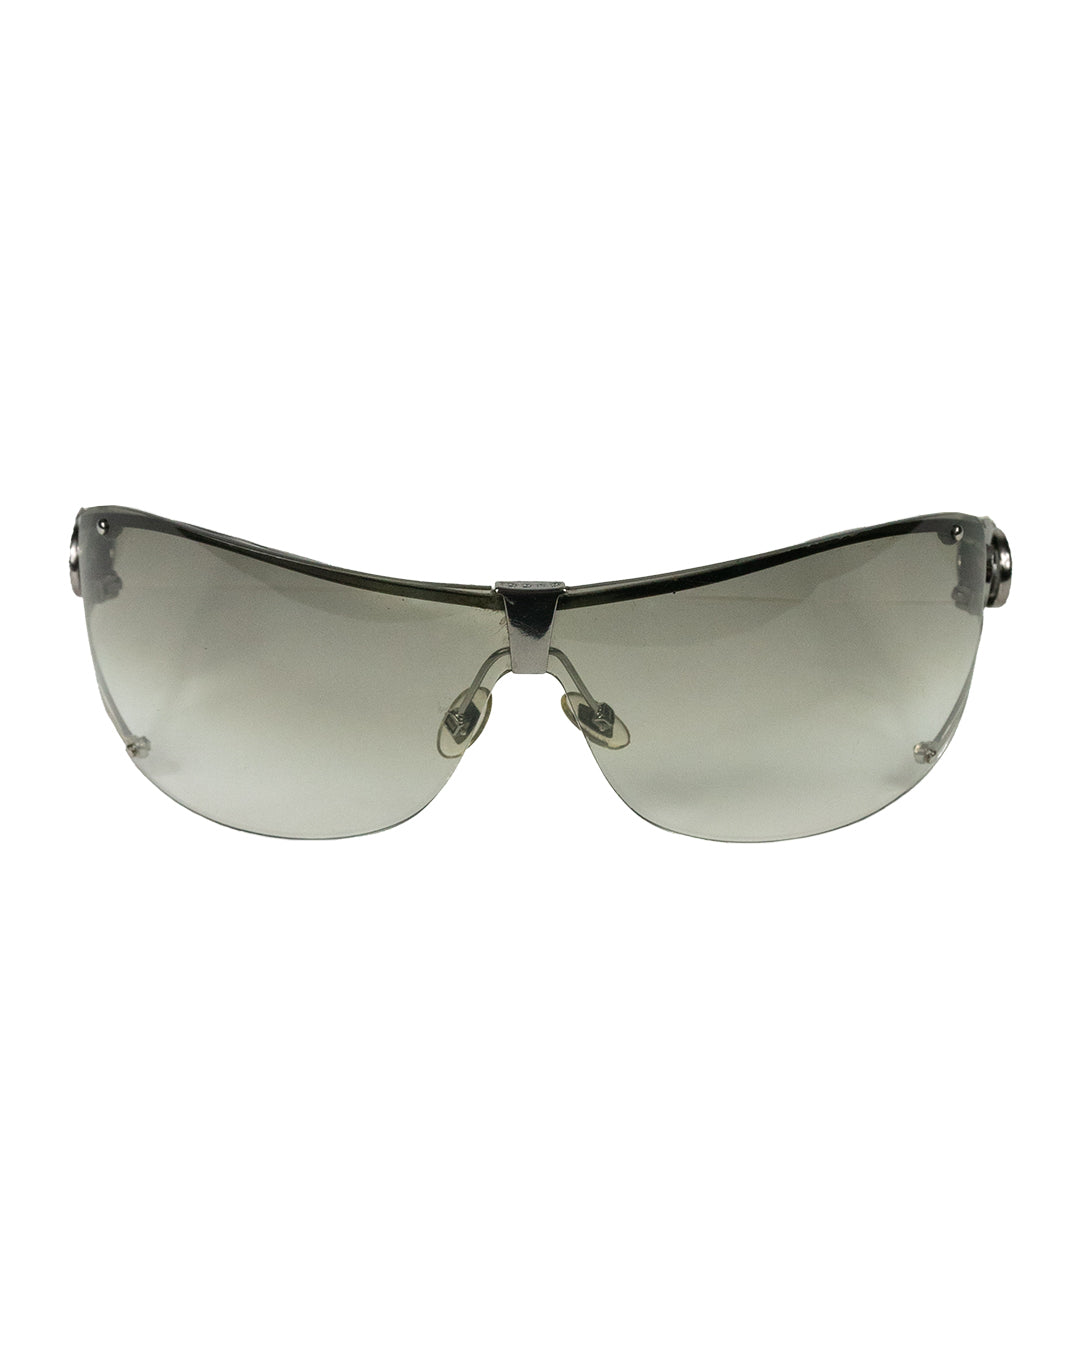 2000s Rhinestone Sunglasses